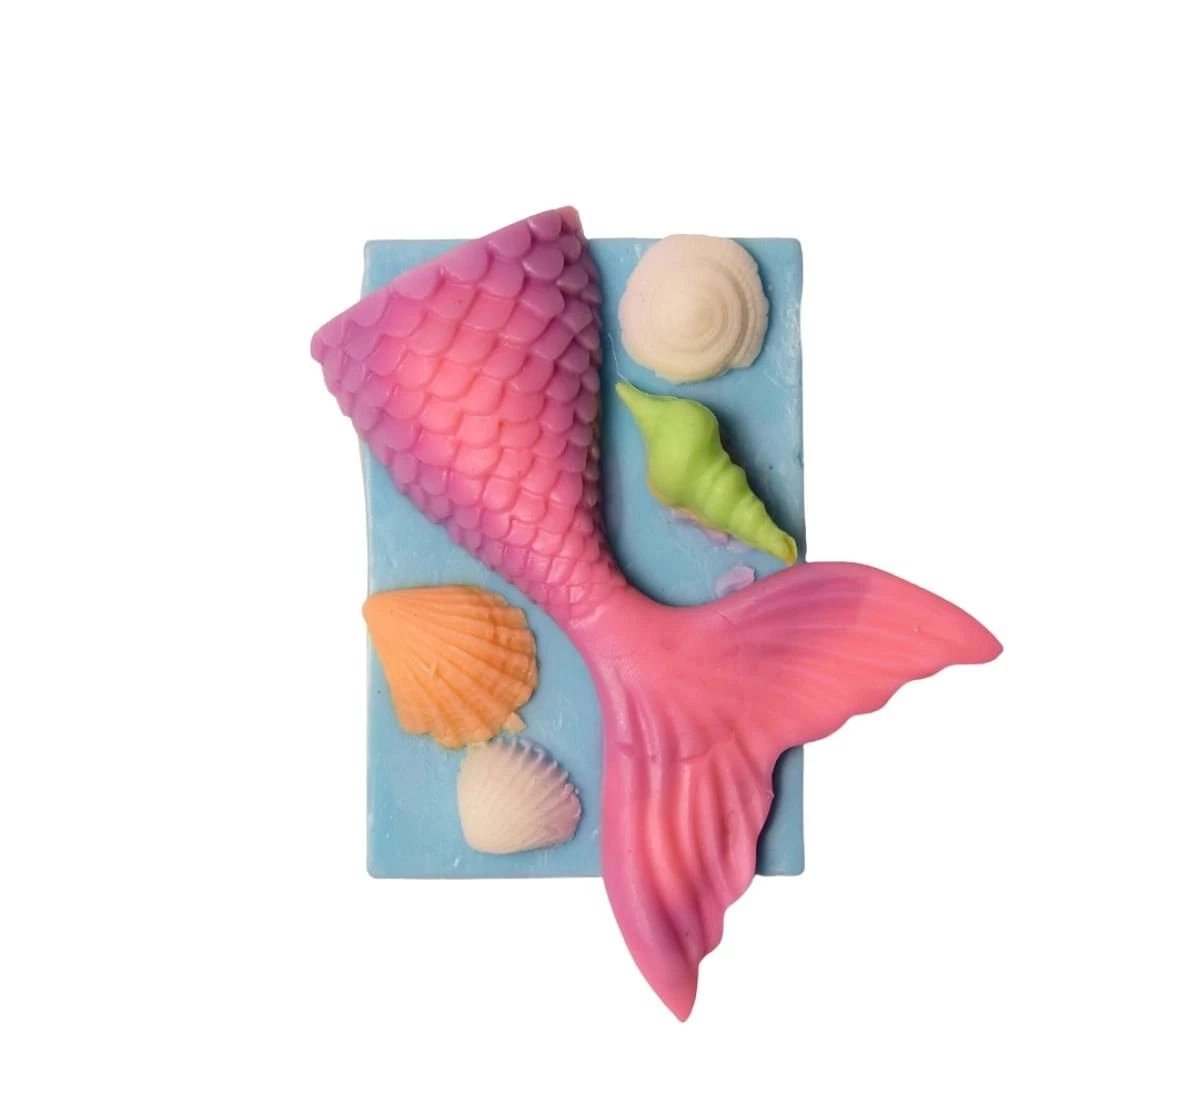 LavicheBathEssentials Mermaid Soap, 2Y+, Assorted